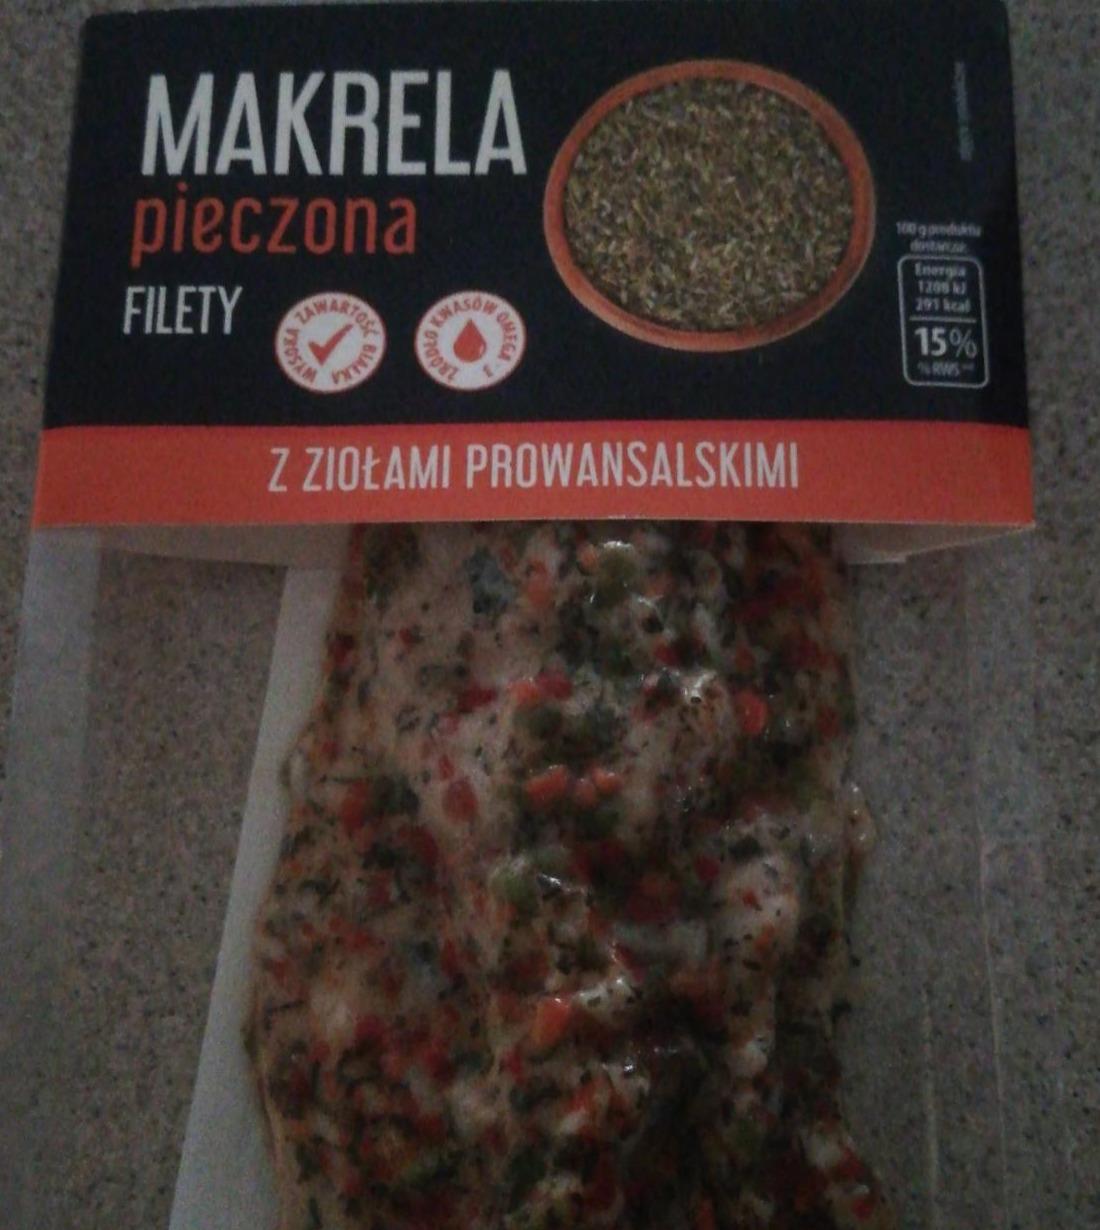 Fotografie - Makrela pieczona filety z ziołami prowansalskimi